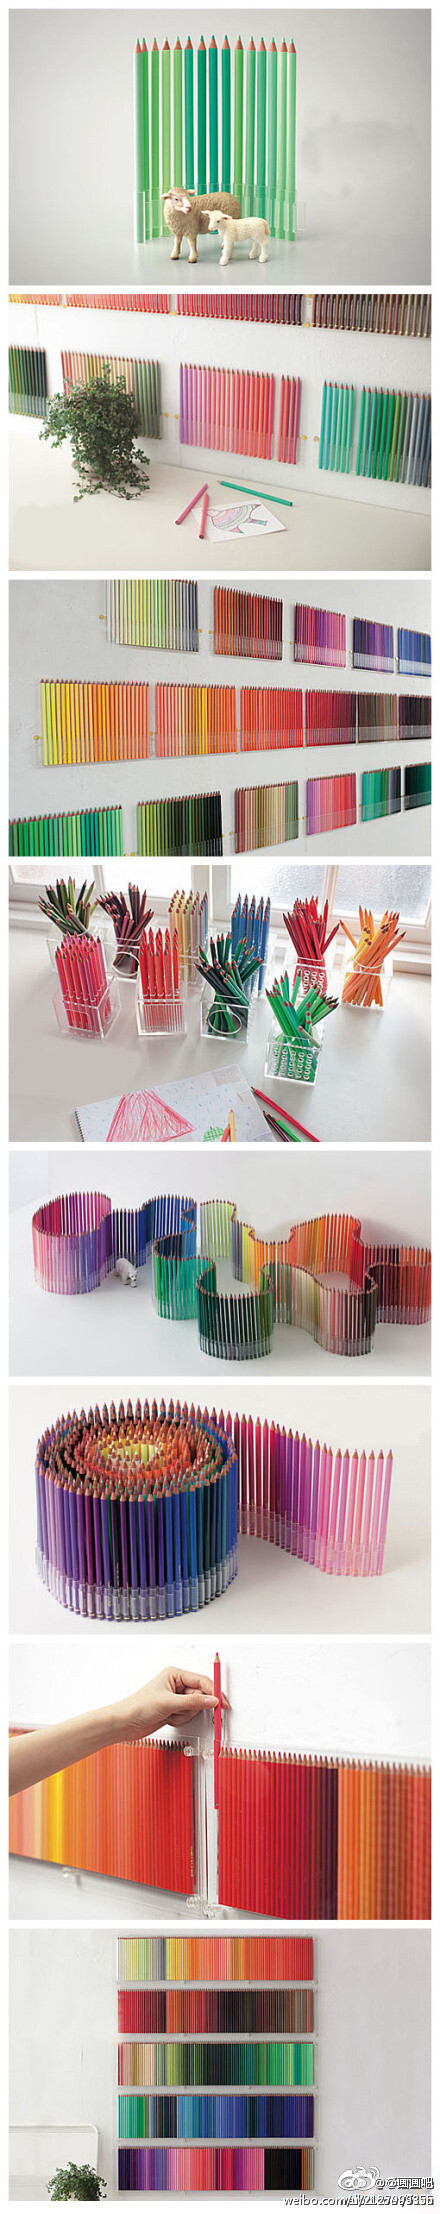 绘画 彩铅“Qianxi丶【500种颜色的铅笔:这是FELISSIMO (芬理希梦)出品的500色铅笔 (500 Colored Pencils)，算得上是现在世界上颜色最多的彩色铅笔了，集合了人肉眼能够分辨的500种色彩，包括明亮的颜色、沉稳的颜色、鲜艳的颜色、深郁的颜色……可以满足人们心中所有关于想象的描绘。】